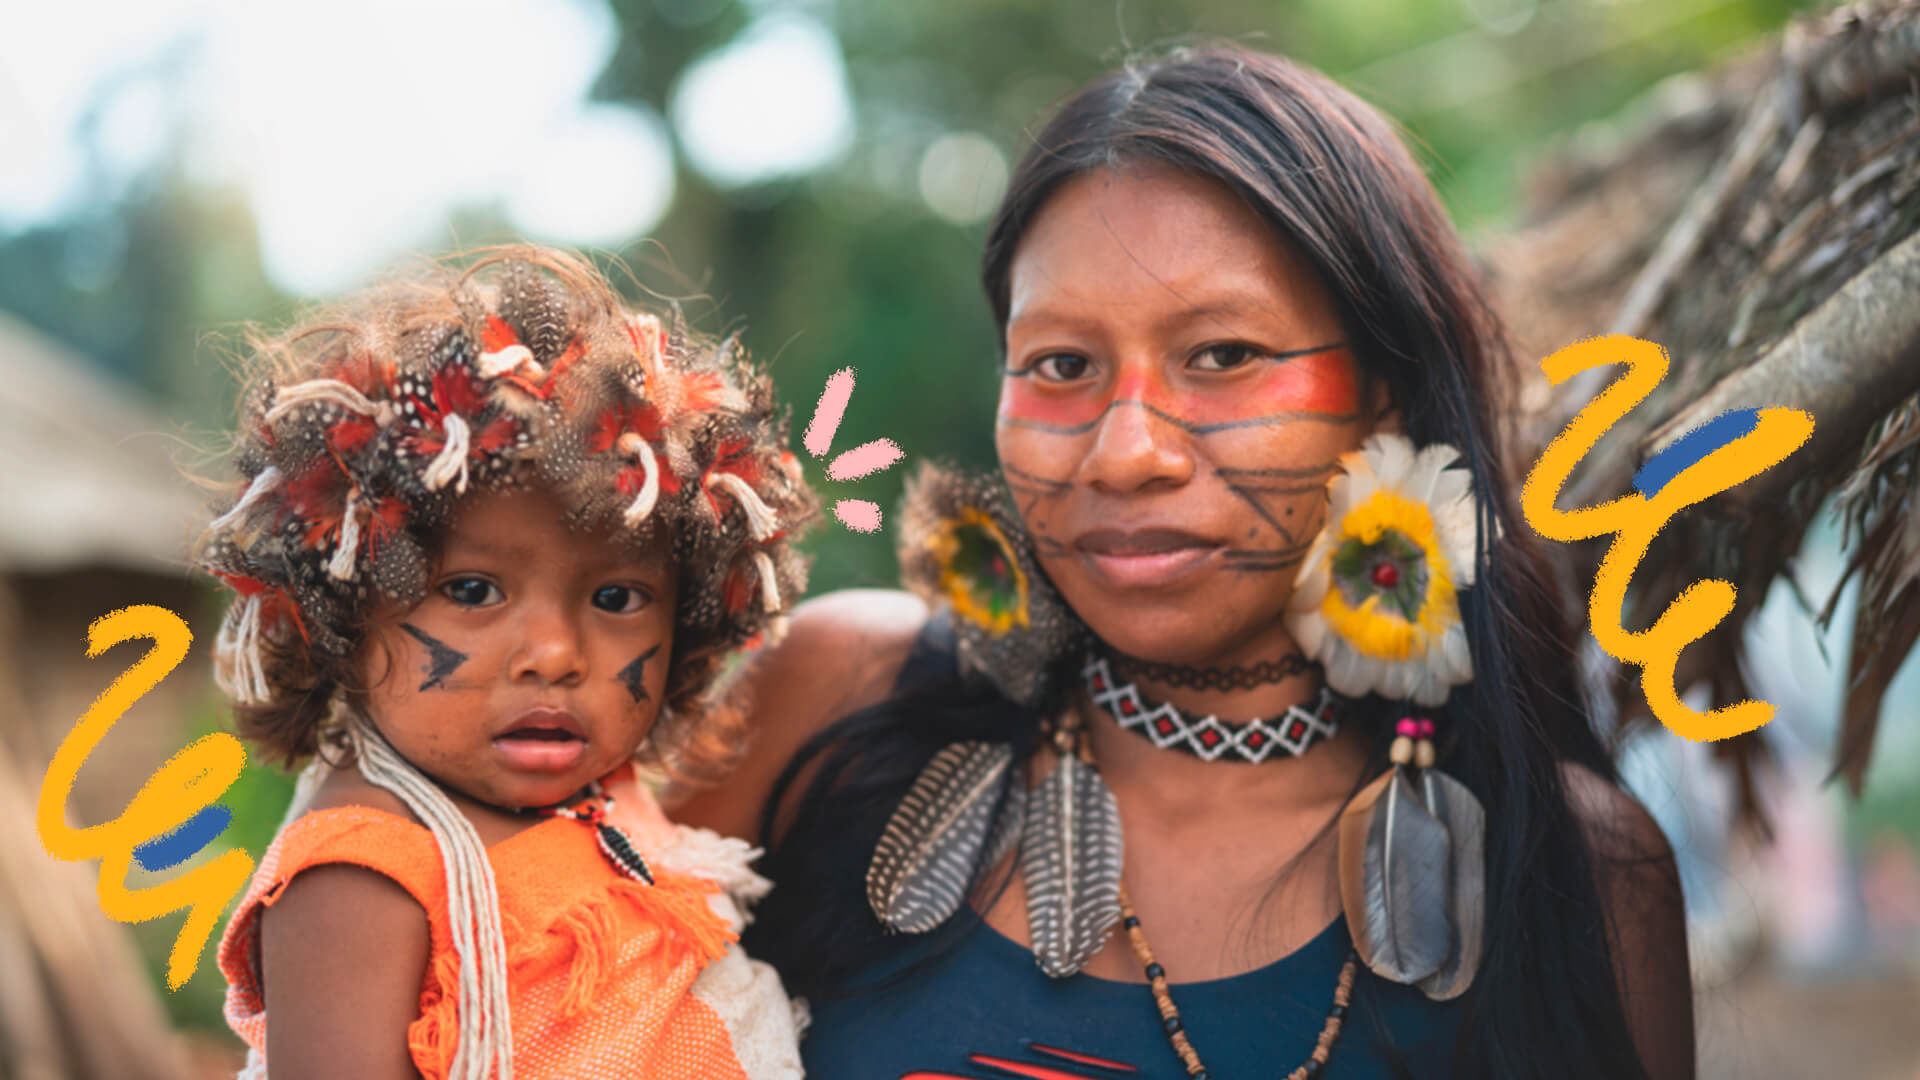 Imagem com mulher indígena segurando no colo uma criança indígena. Ambos estão com os rostos pintados e usam acessórios indígenas.